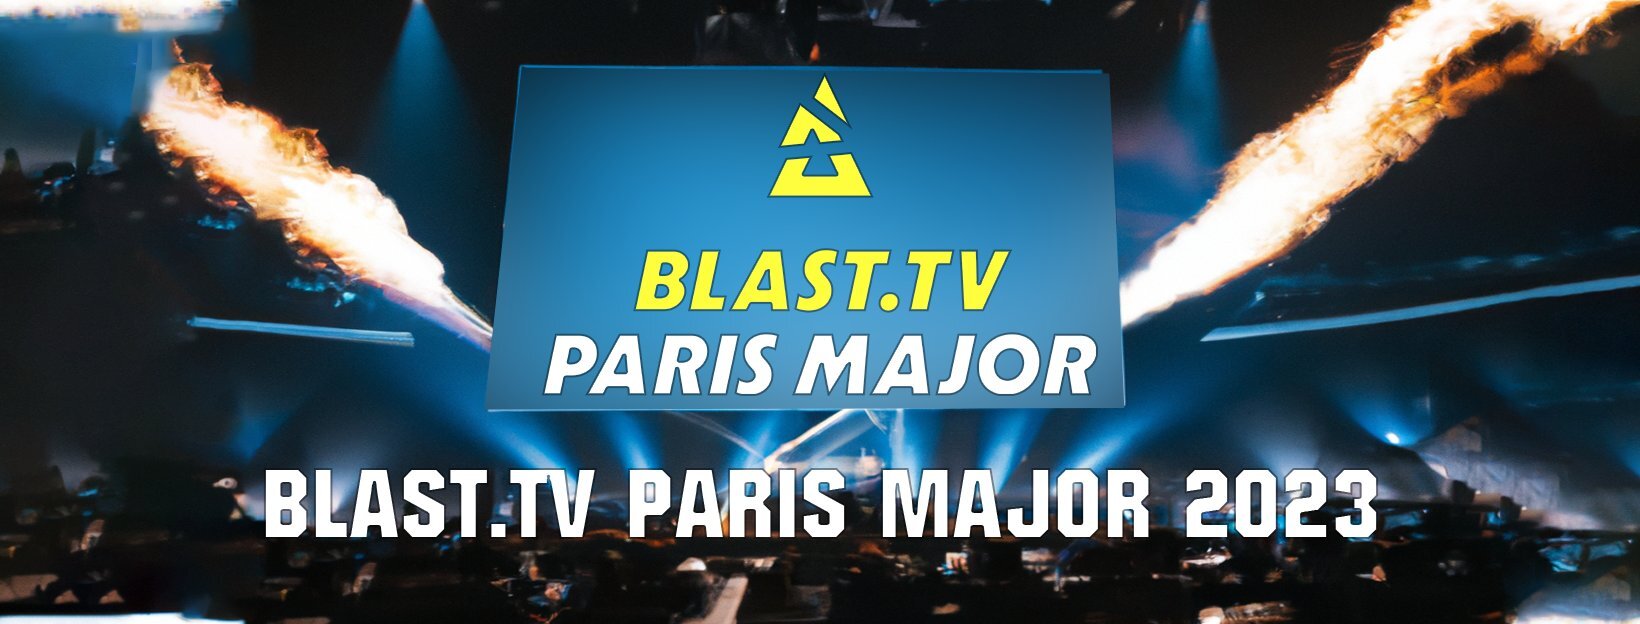 BLAST.tv Paris Major 2023 1